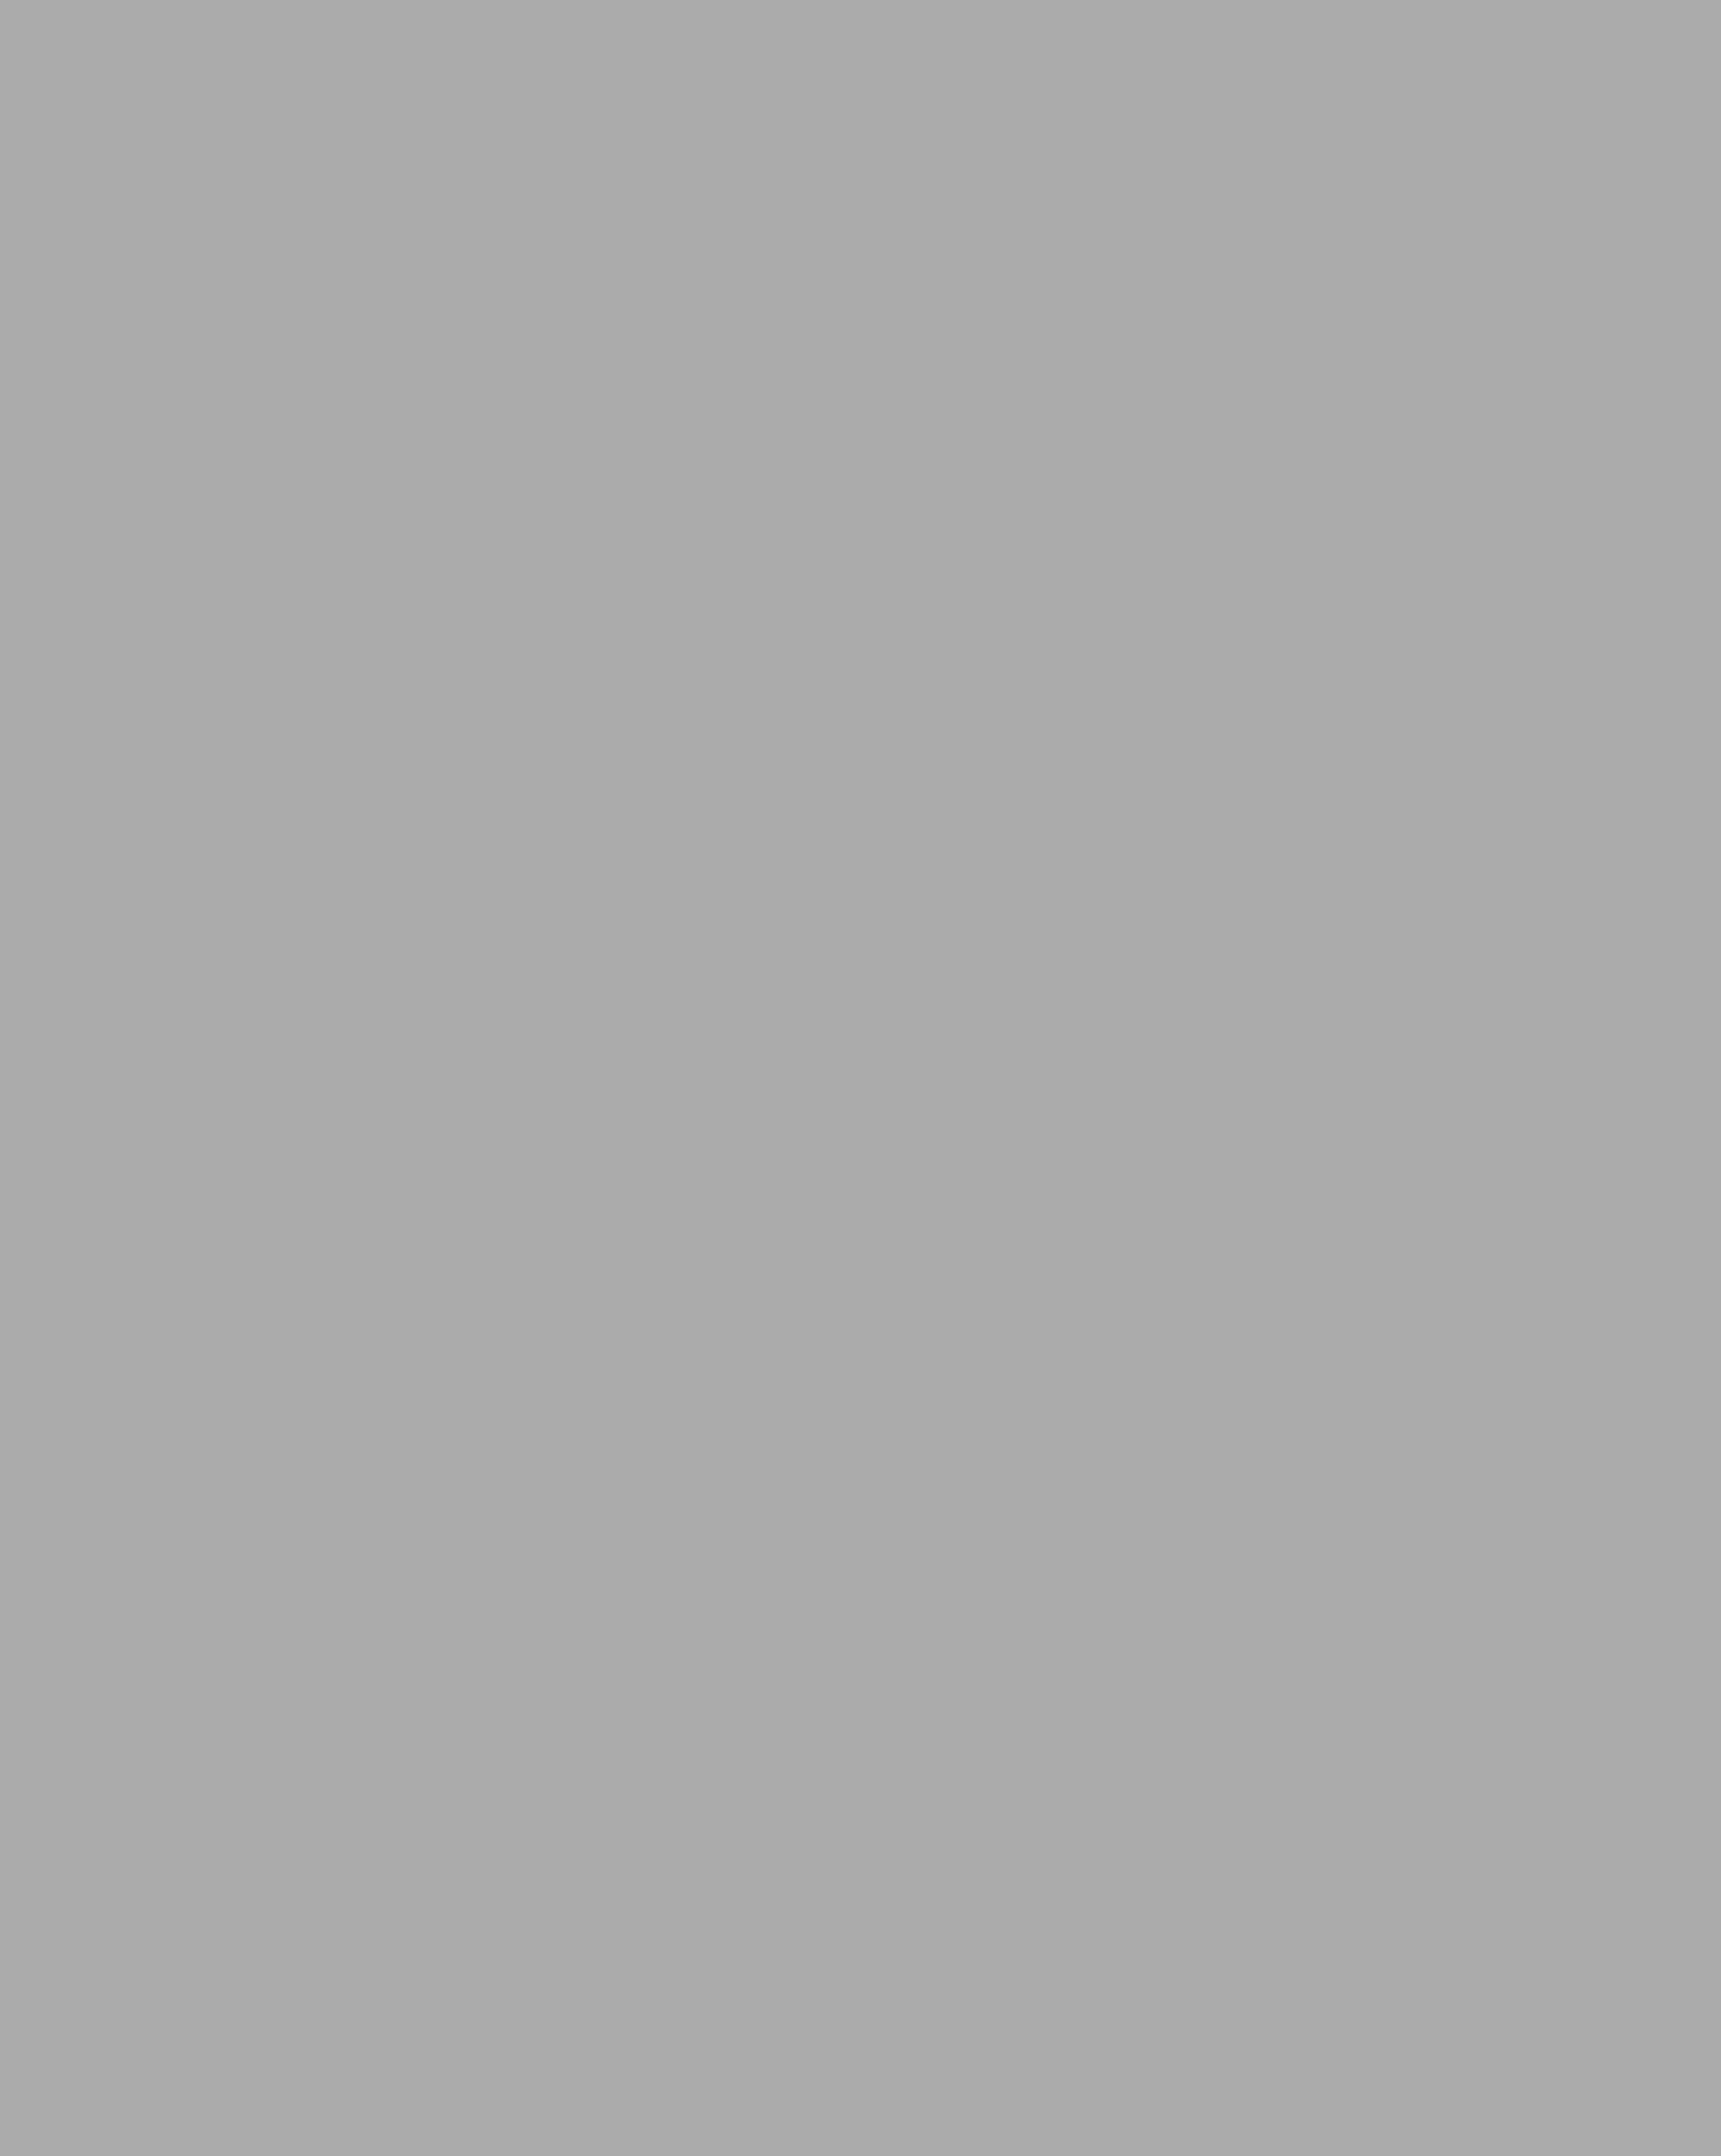 Афанасий Думнов — полный георгиевский кавалер, уроженец села Тарбагатай. Фотография из семейного архива Думновых / из фондов ГАУК РБ «Национальный музей Республики Бурятия», Улан-Удэ